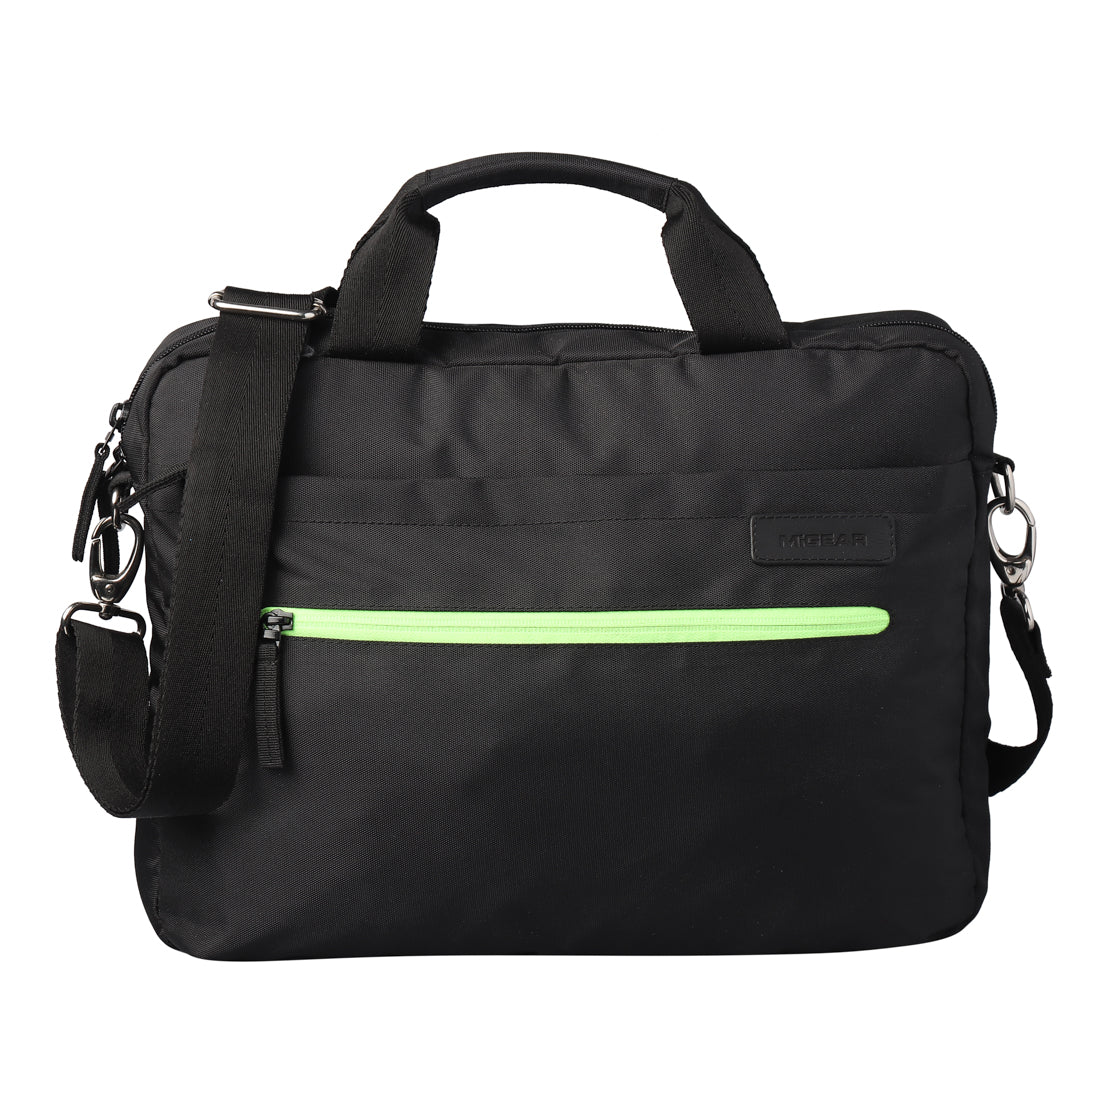 NeonVerse Messenger Laptop Bag